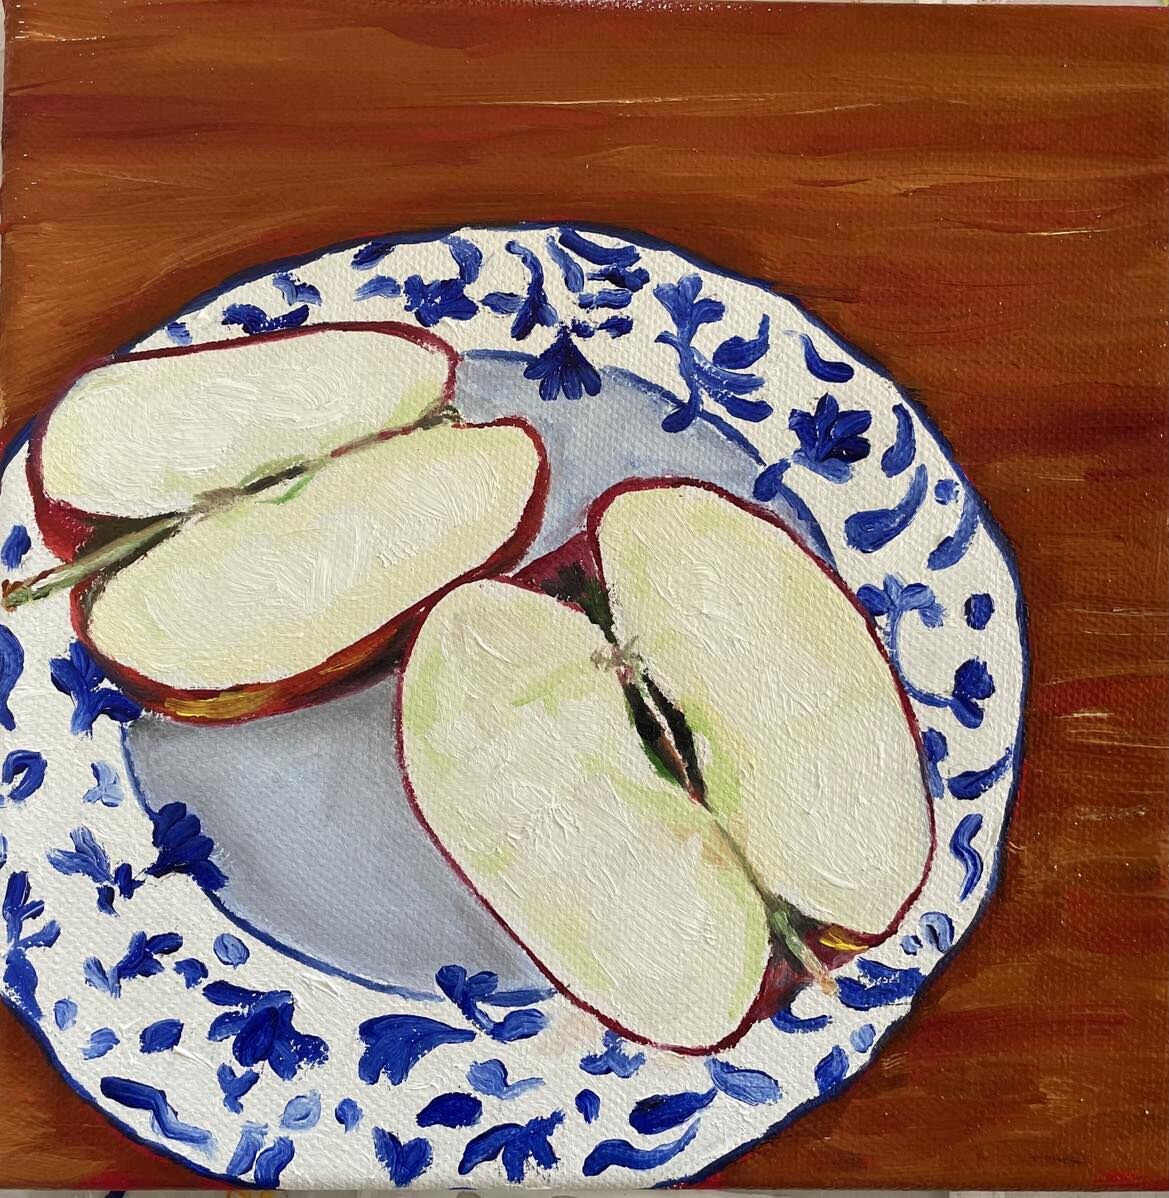 Gala Apple on blue plate